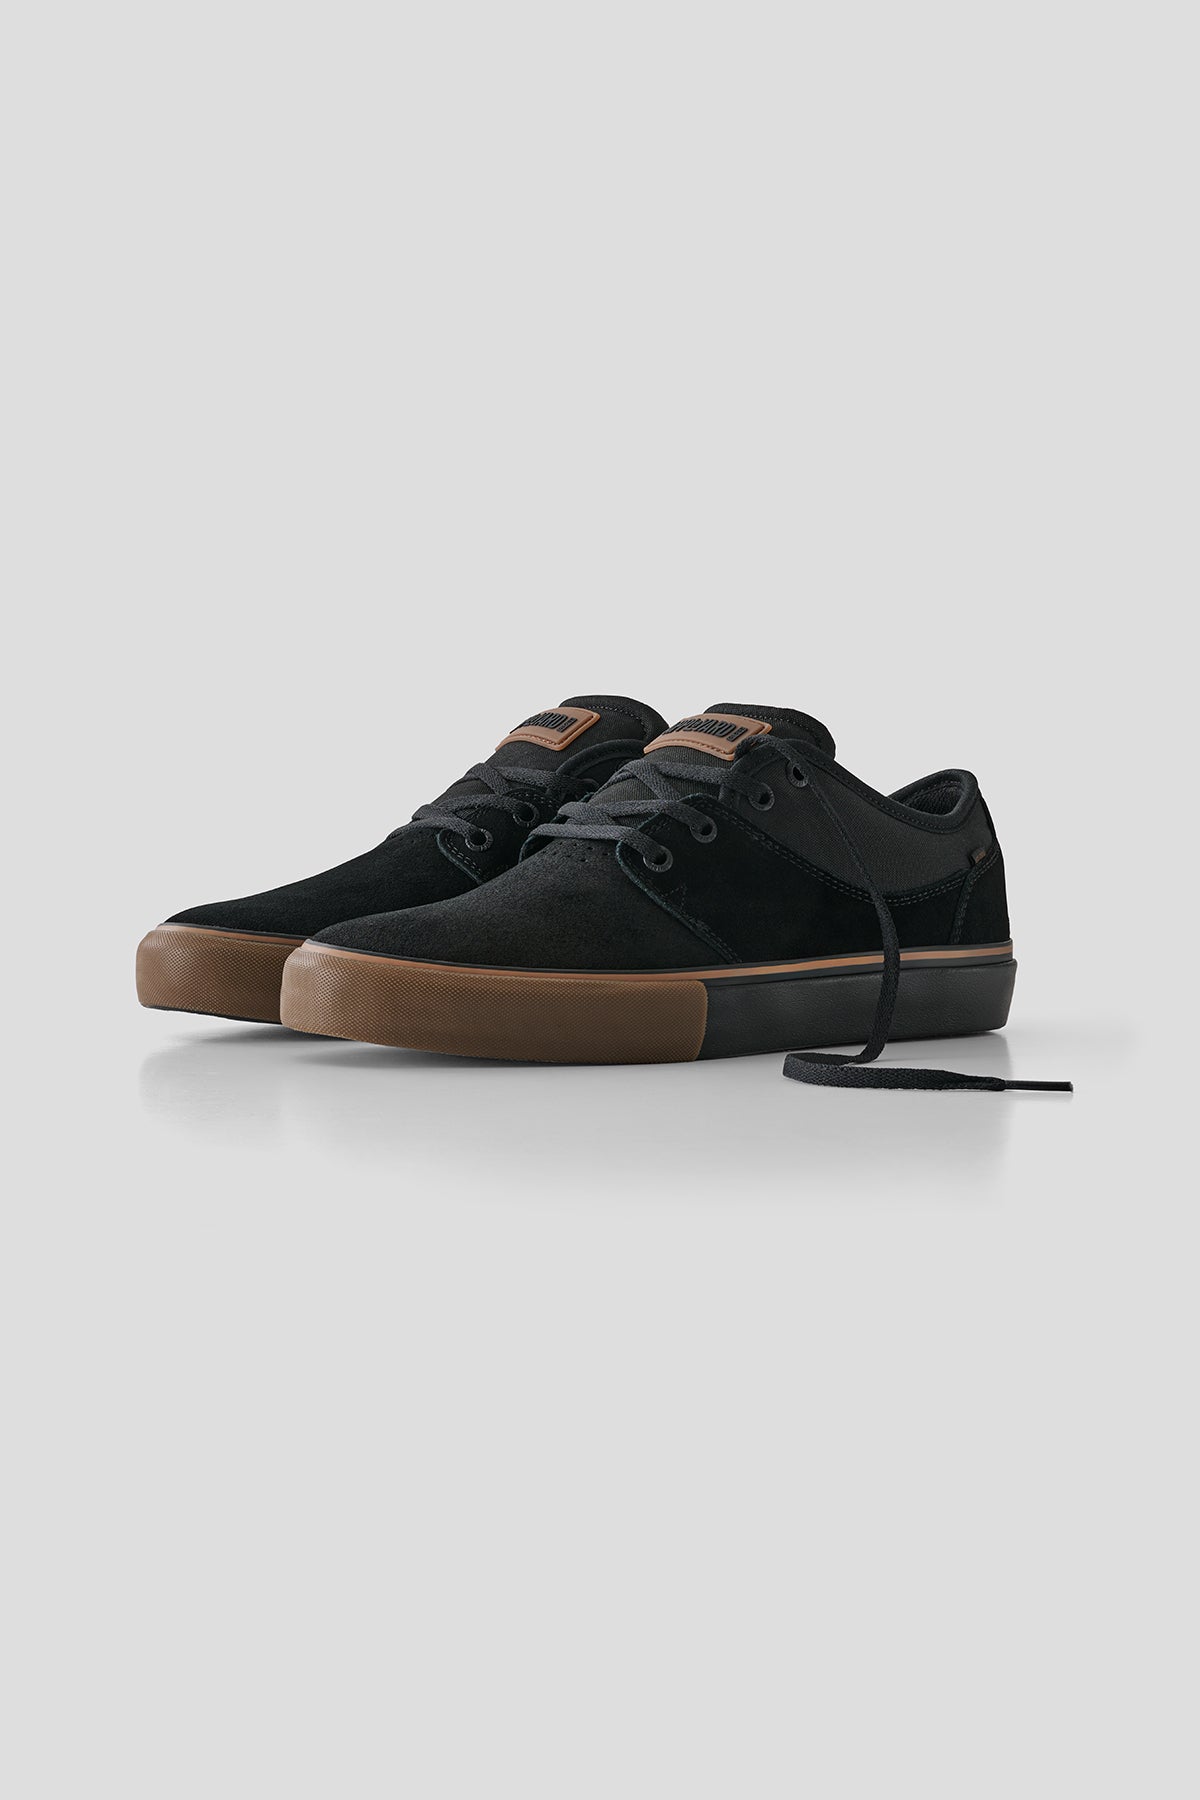 Mahalo - Schwarz/Gummi - skateboard Schuhe